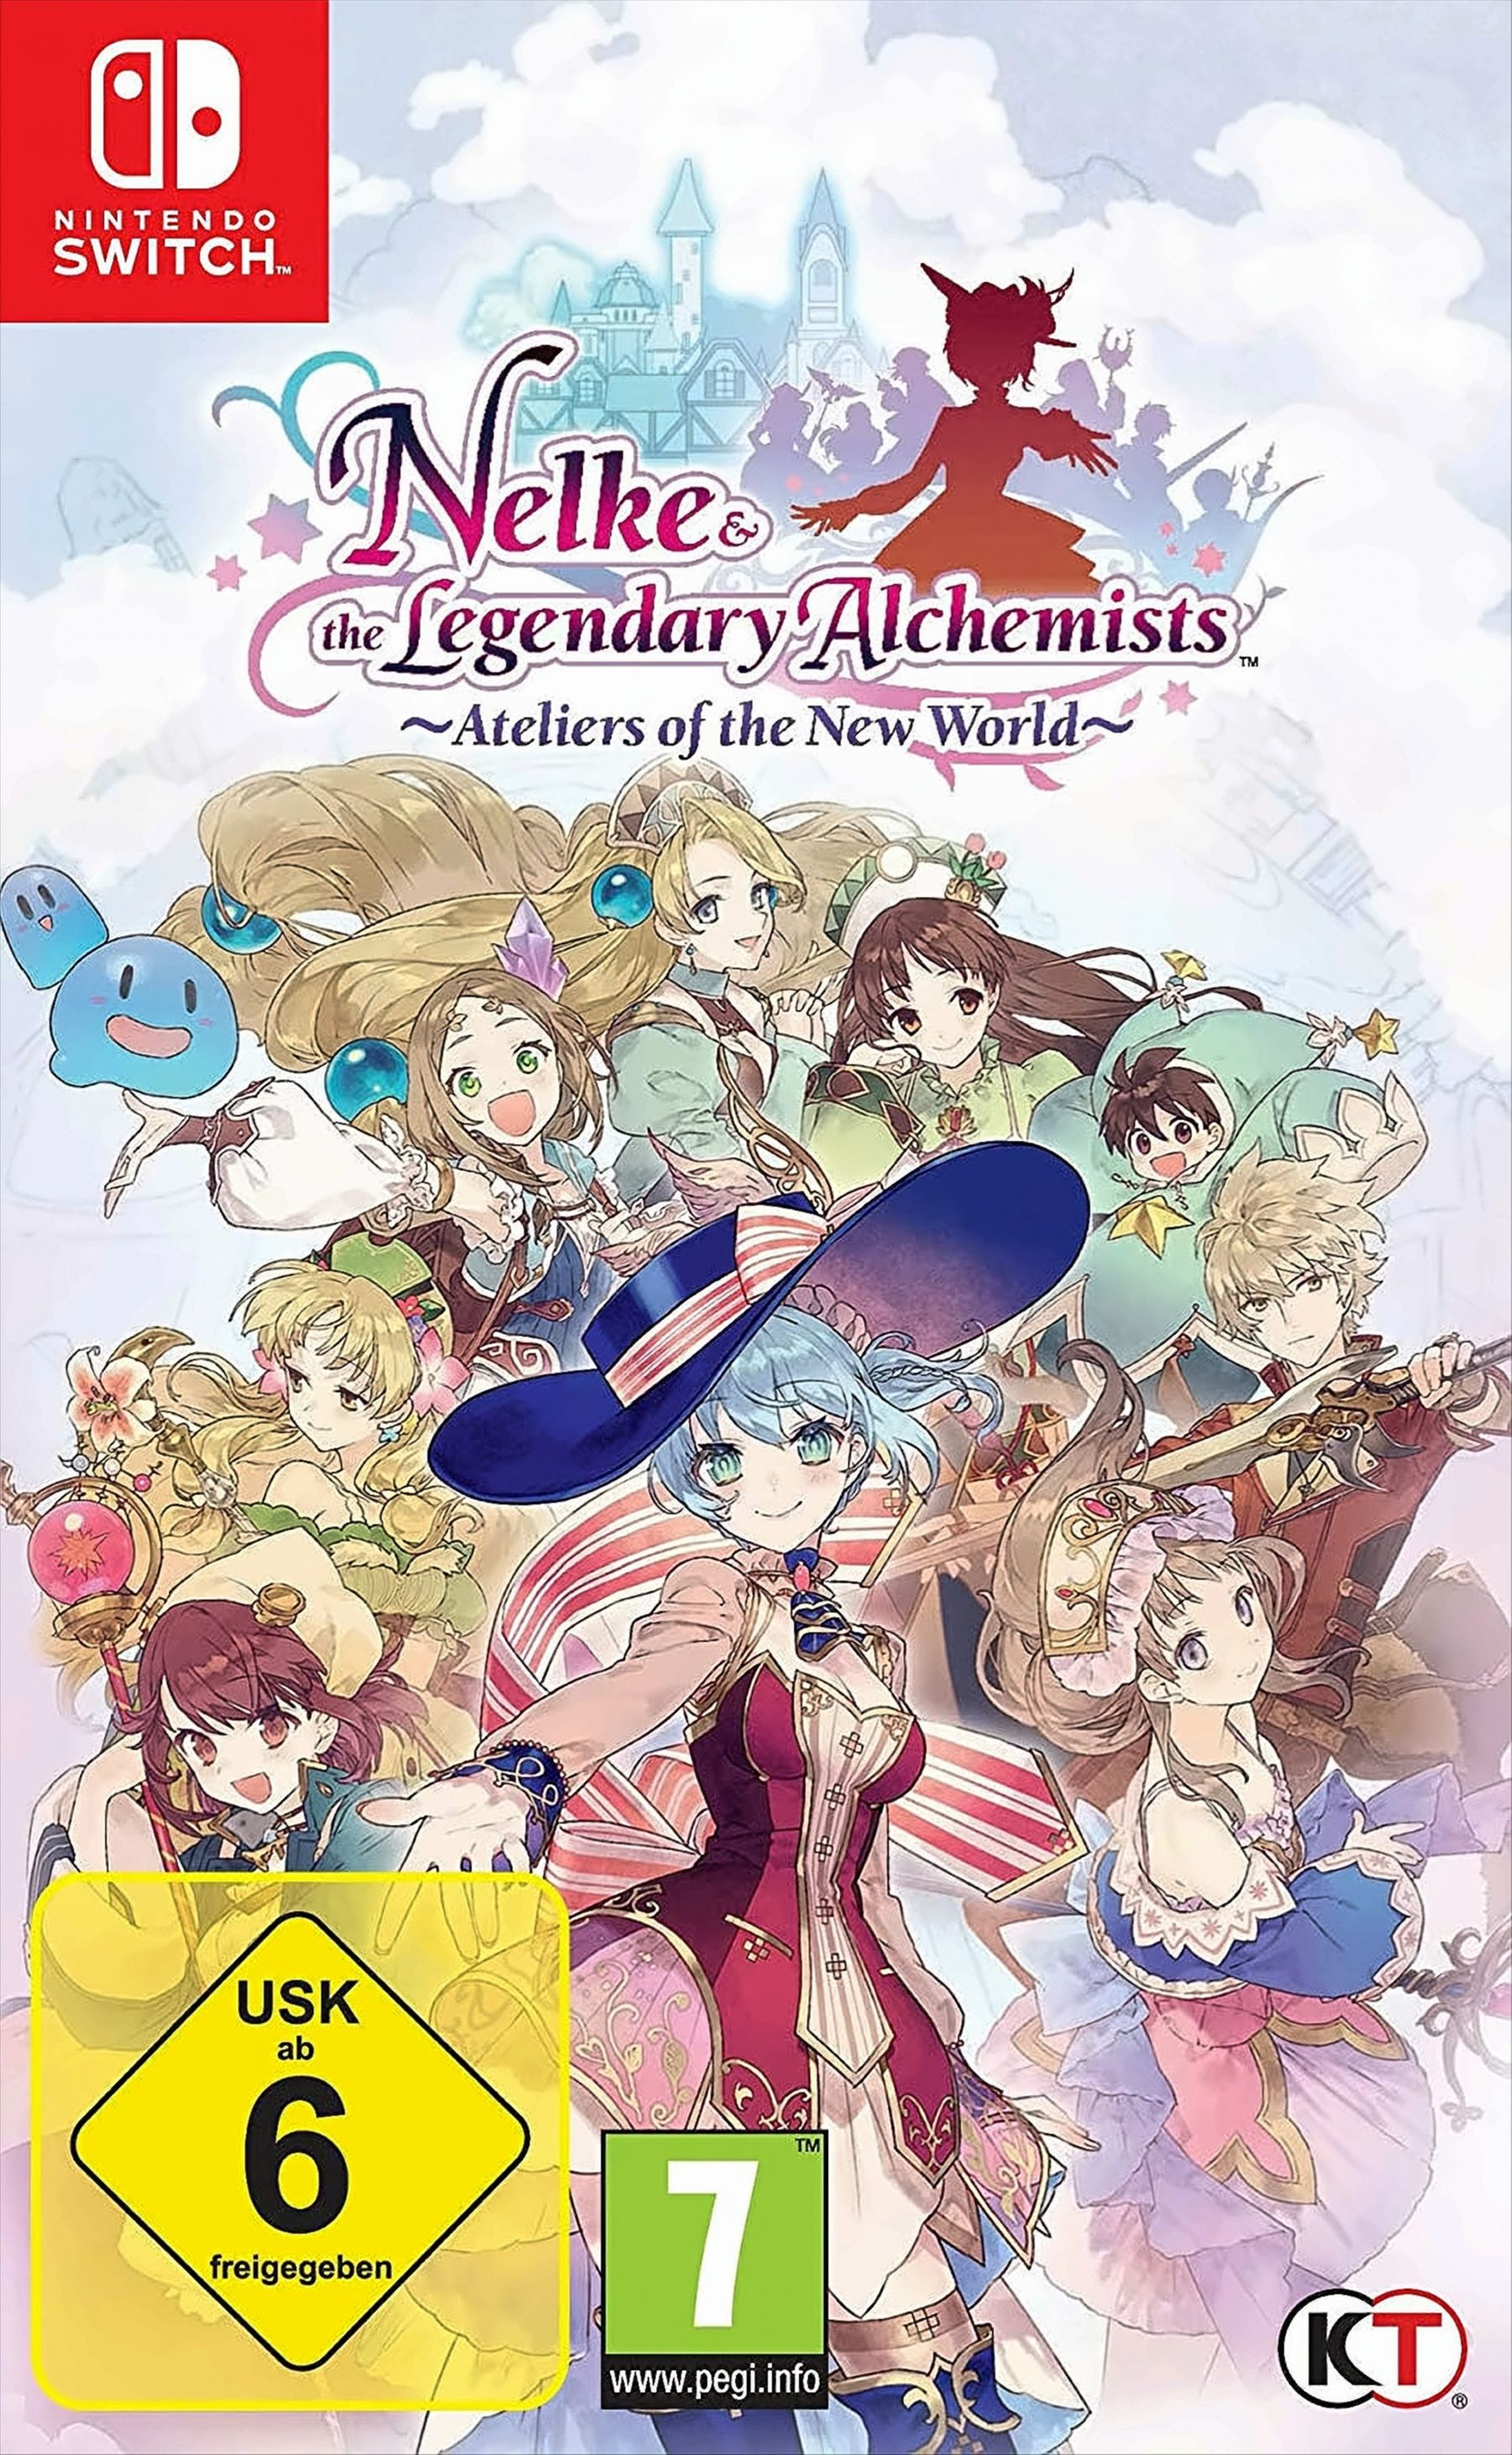 Legendary Switch] Ateliers Nelke of - the [Nintendo the Alchemists: New & World